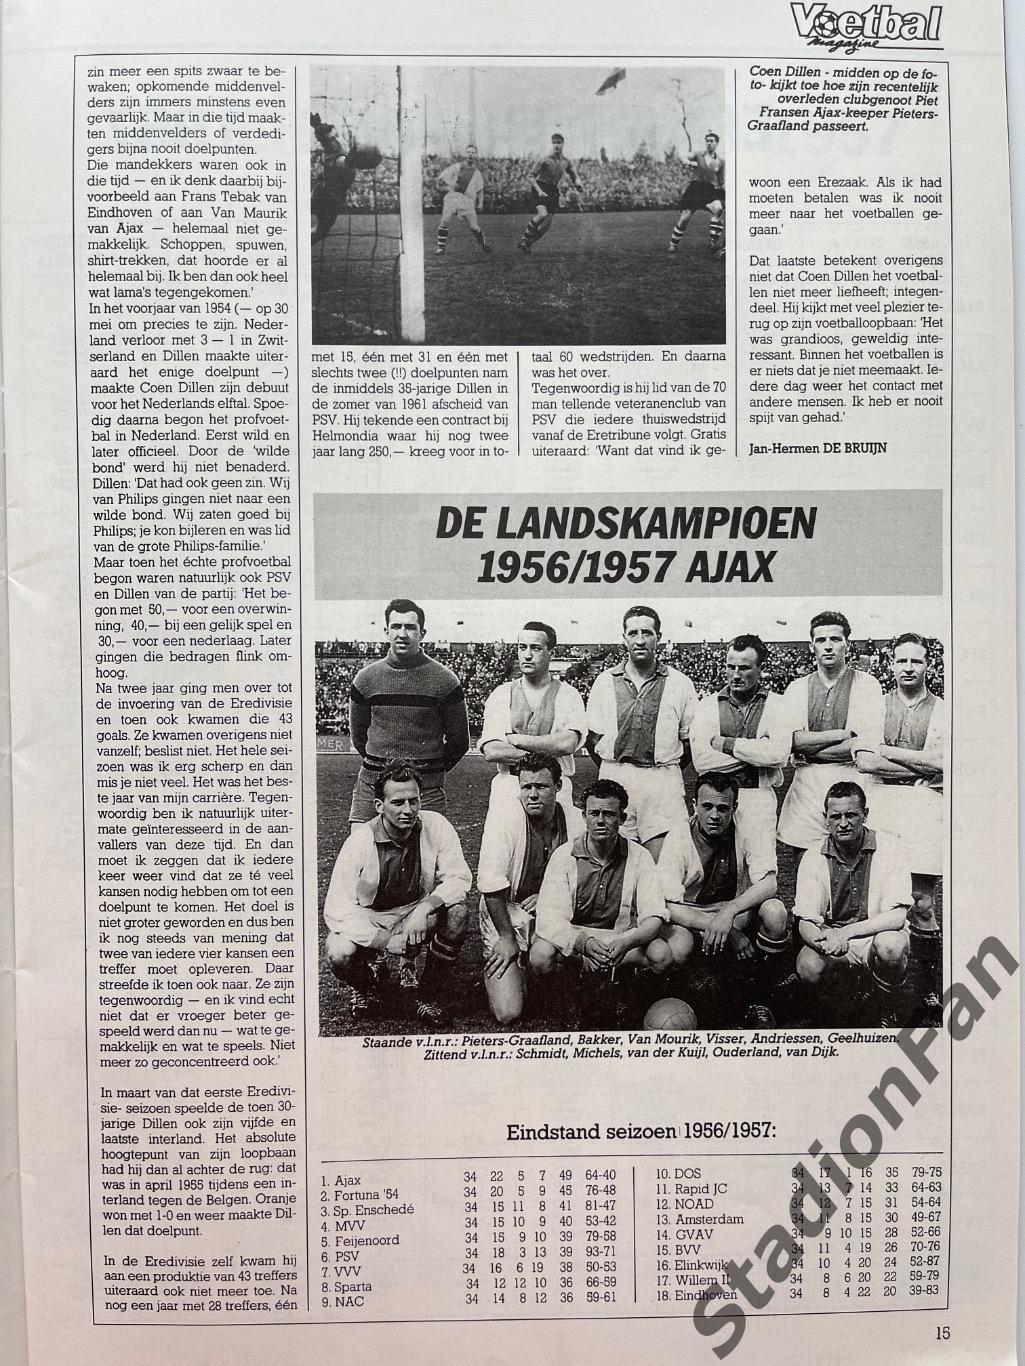 Журнал Voetbal - 1985 год. 7